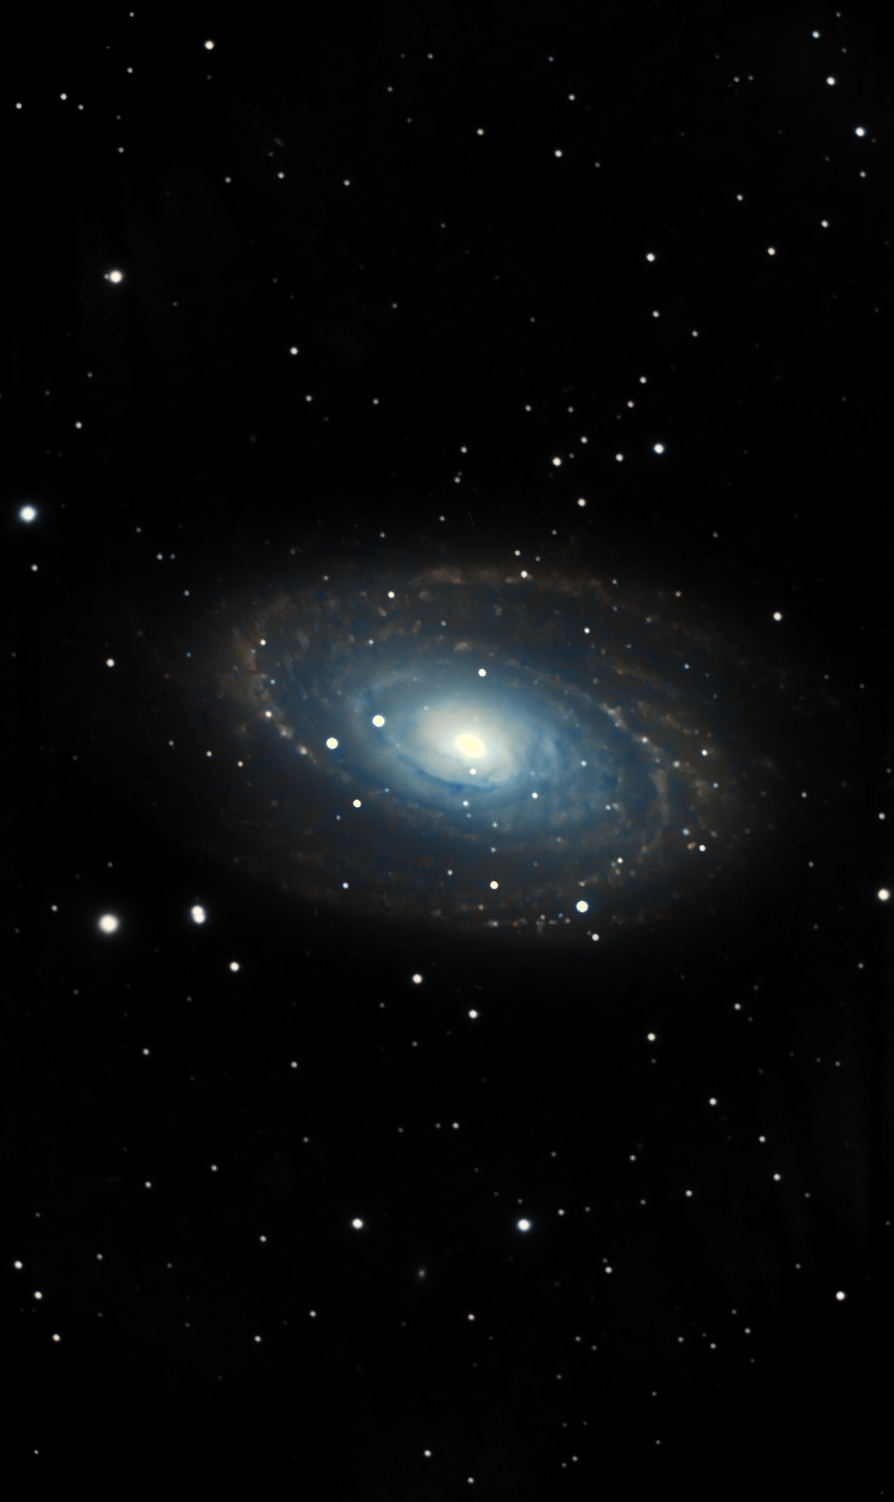 M81 - Bode's Galaxy<br>
		 by Jeff Kraehnke 